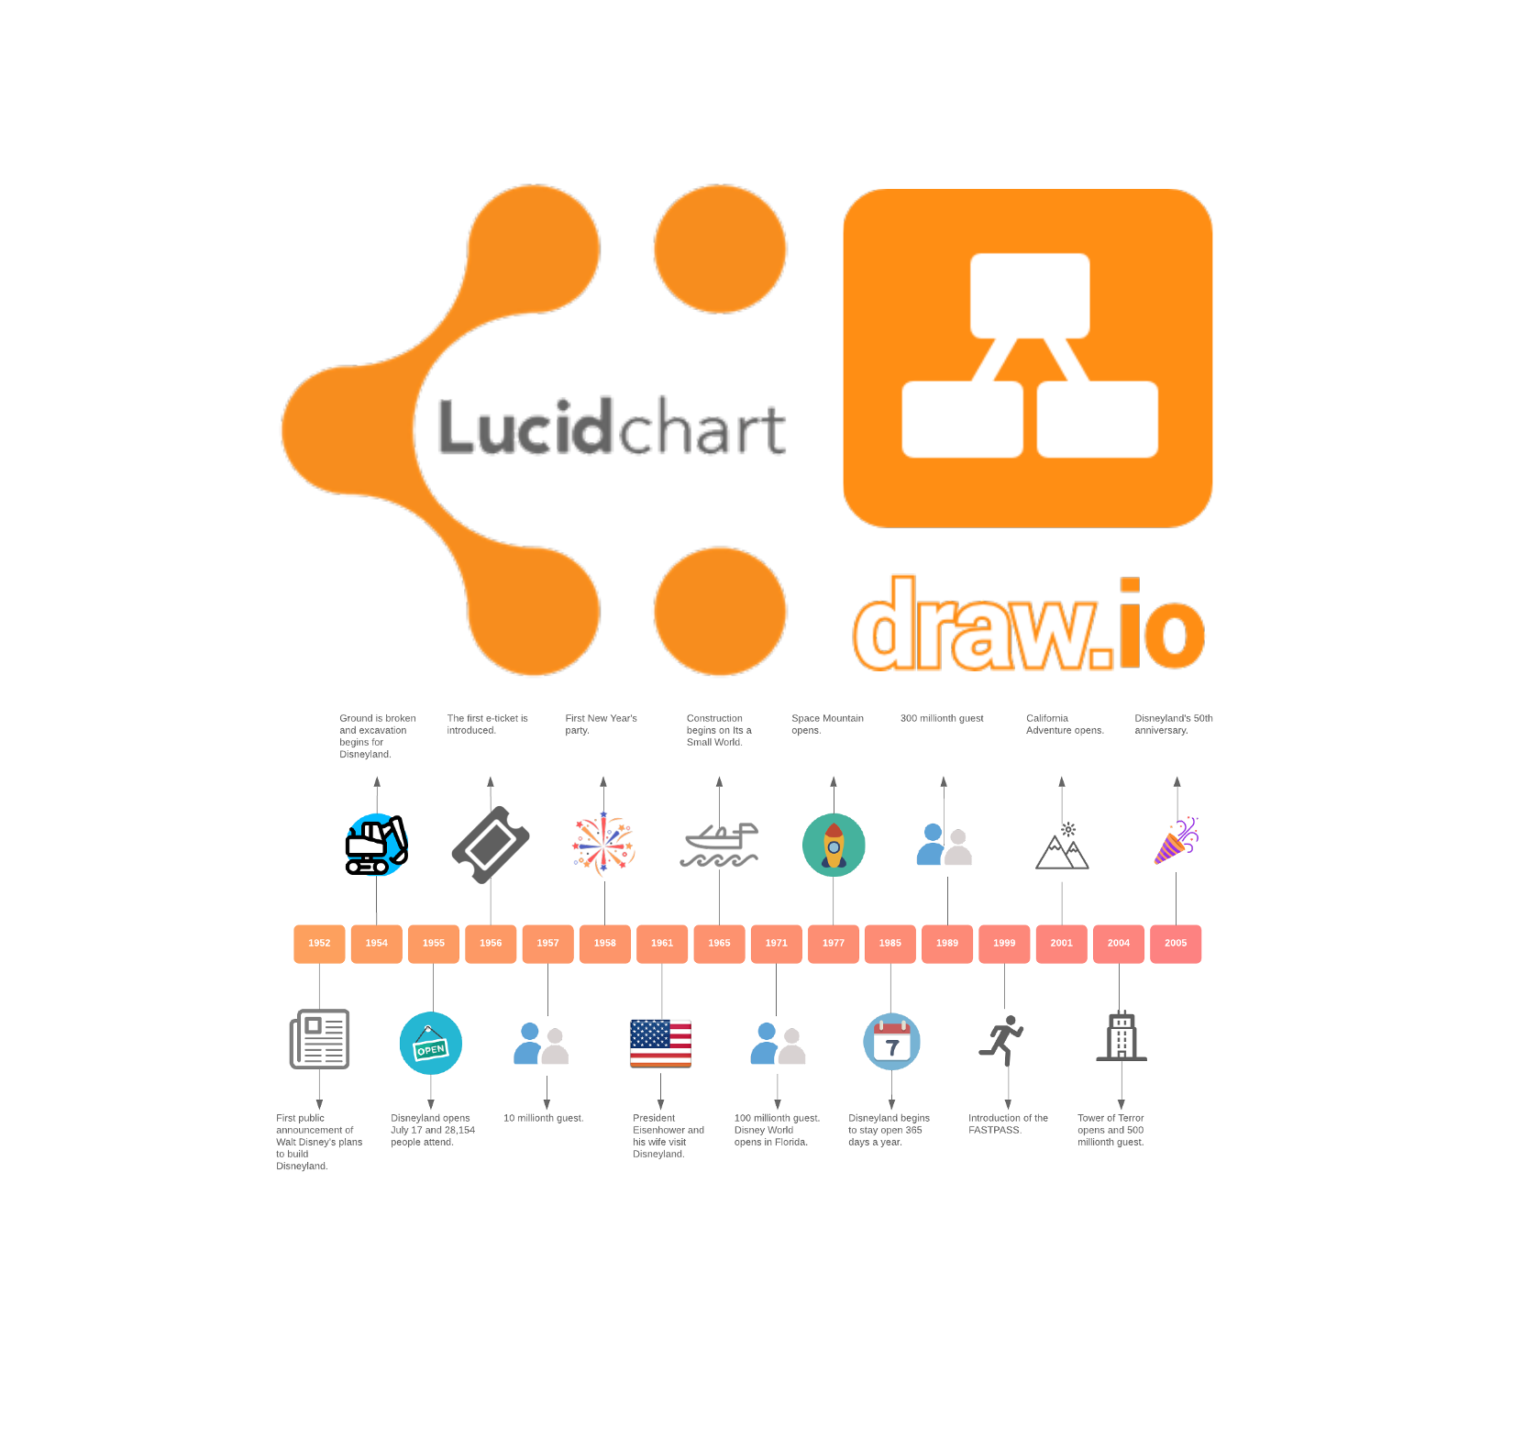 문서 작성시 멋진 다이어그램을 쉽게 그리는 방법(Lucid Chart/Draw.io)